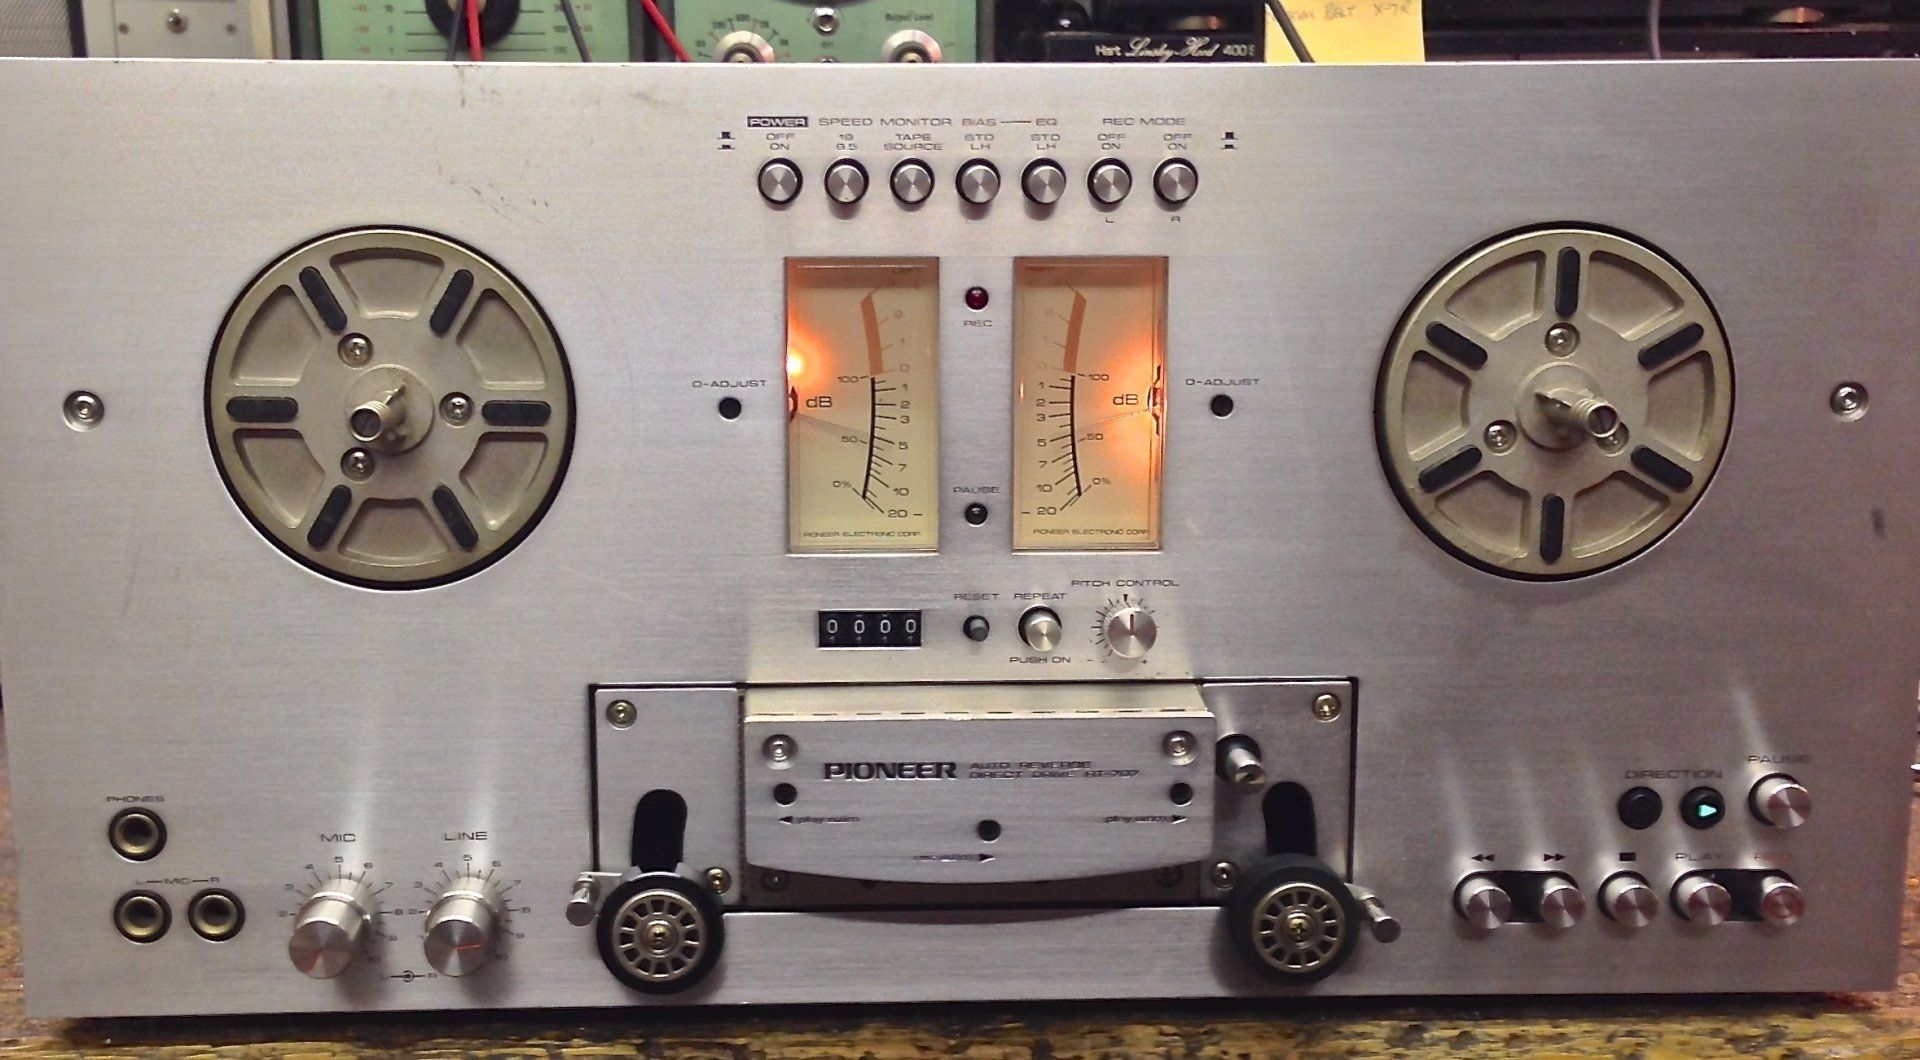 Pioneer RT-707 reel to reel tape recorder.